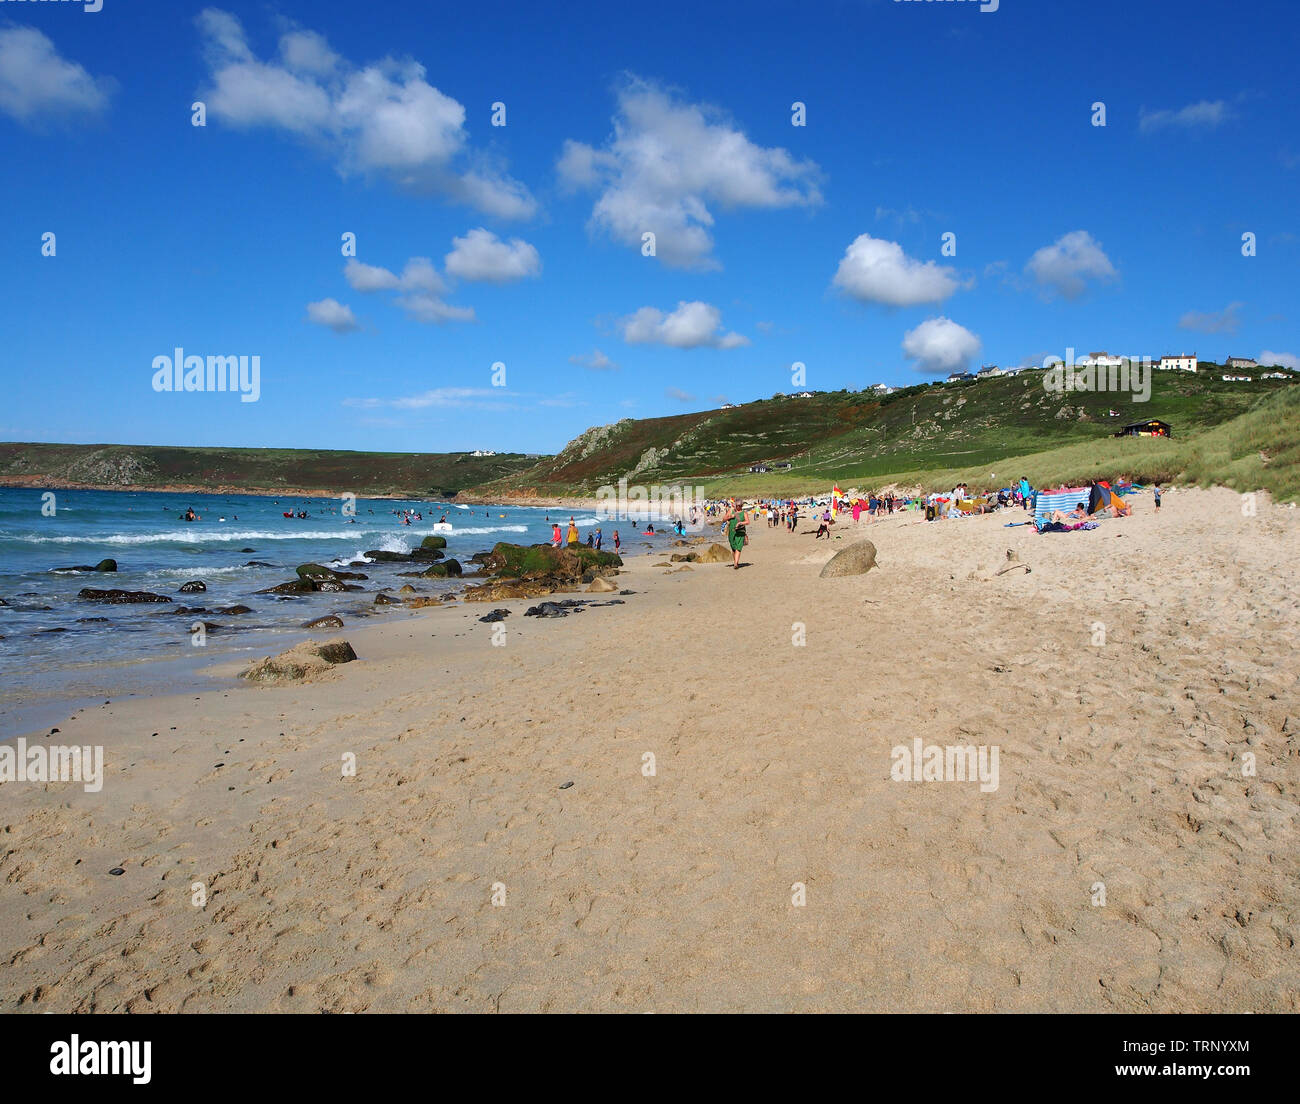 Un jour d'été ensoleillé sur la plage de Sennen Cove, Cornwall, Angleterre, Royaume-Uni montrant la plage de sable et la mer bleue sous un ciel bleu. Banque D'Images